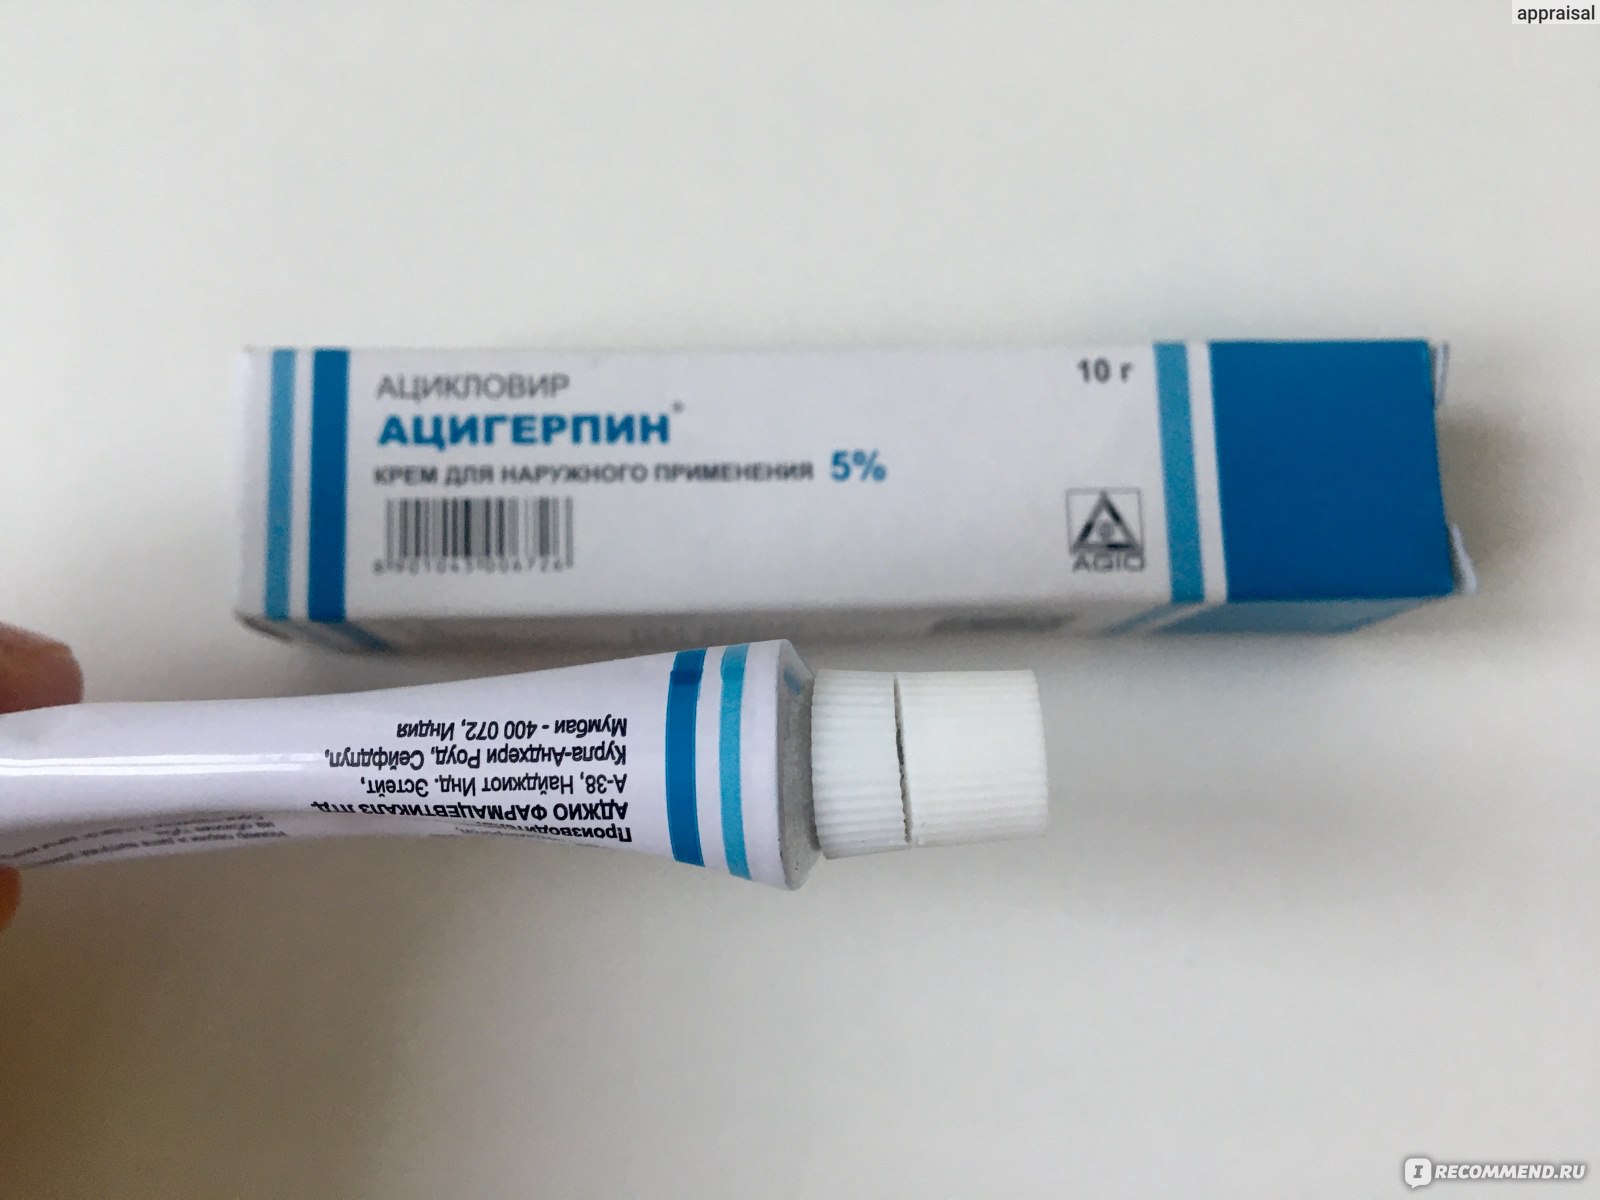 Противовирусное средство Ацигерпин - «Мазь Ацигерпин быстро вылечит .